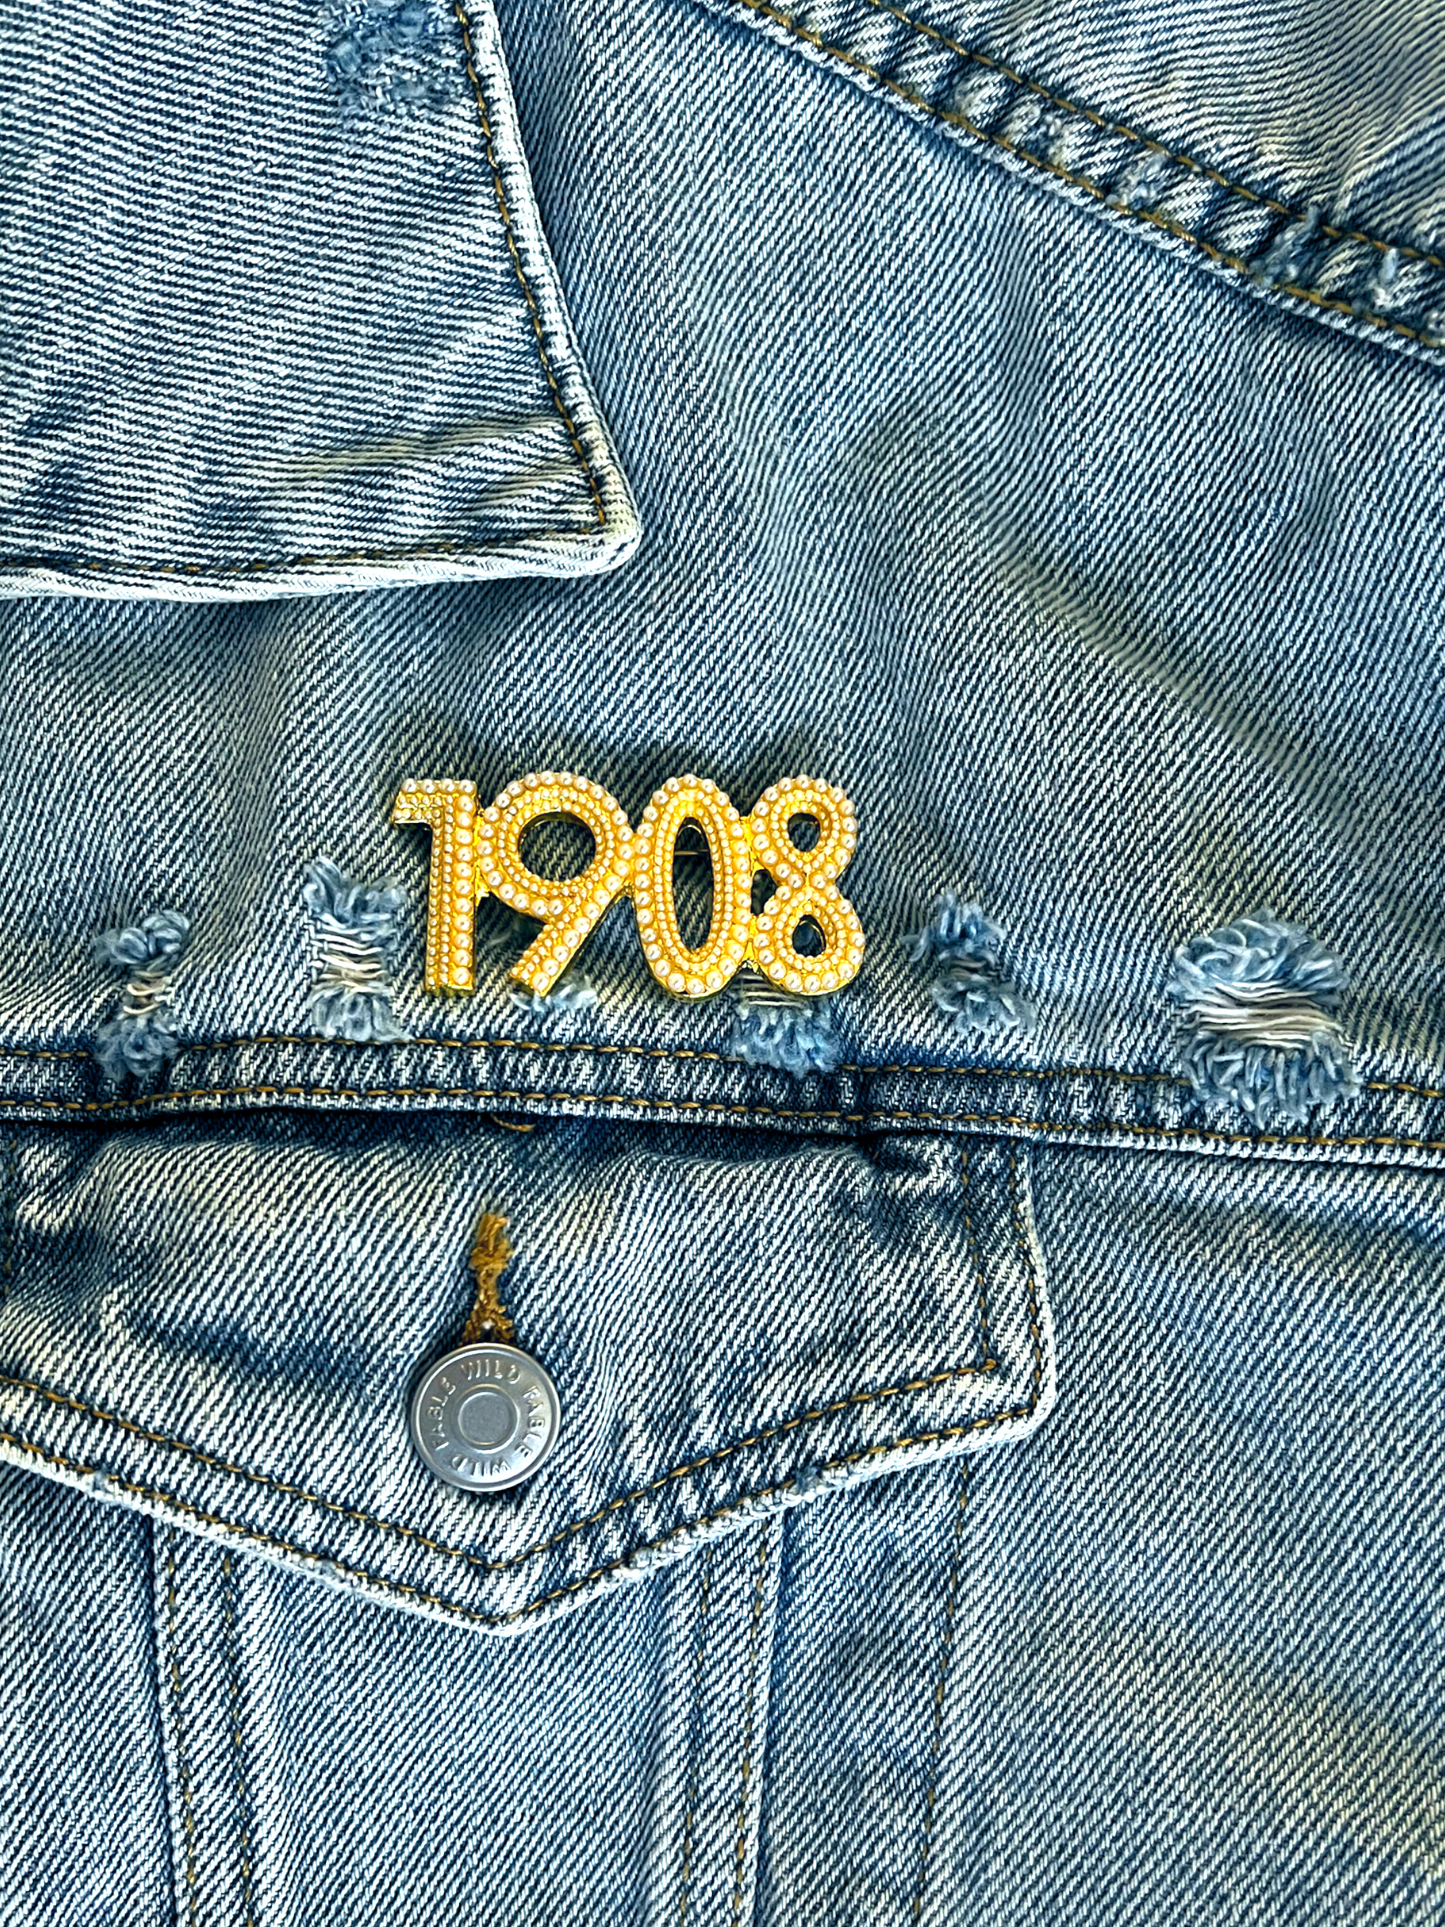 AKA 1908 Pearl pin